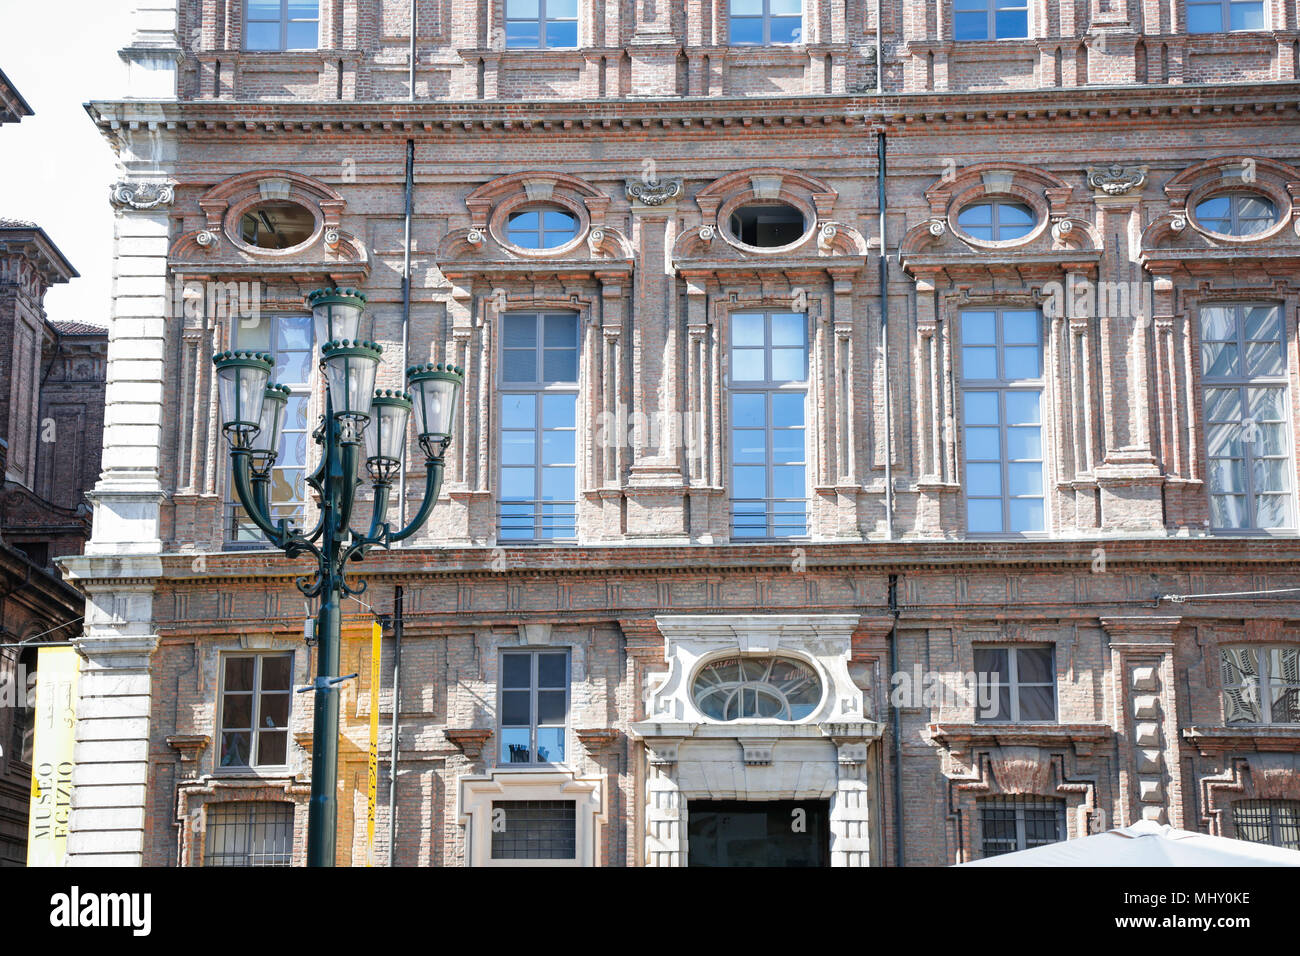 Ristorante del Cambio, opposite Palazzo Carignano, in Turin, Italy Stock Photo